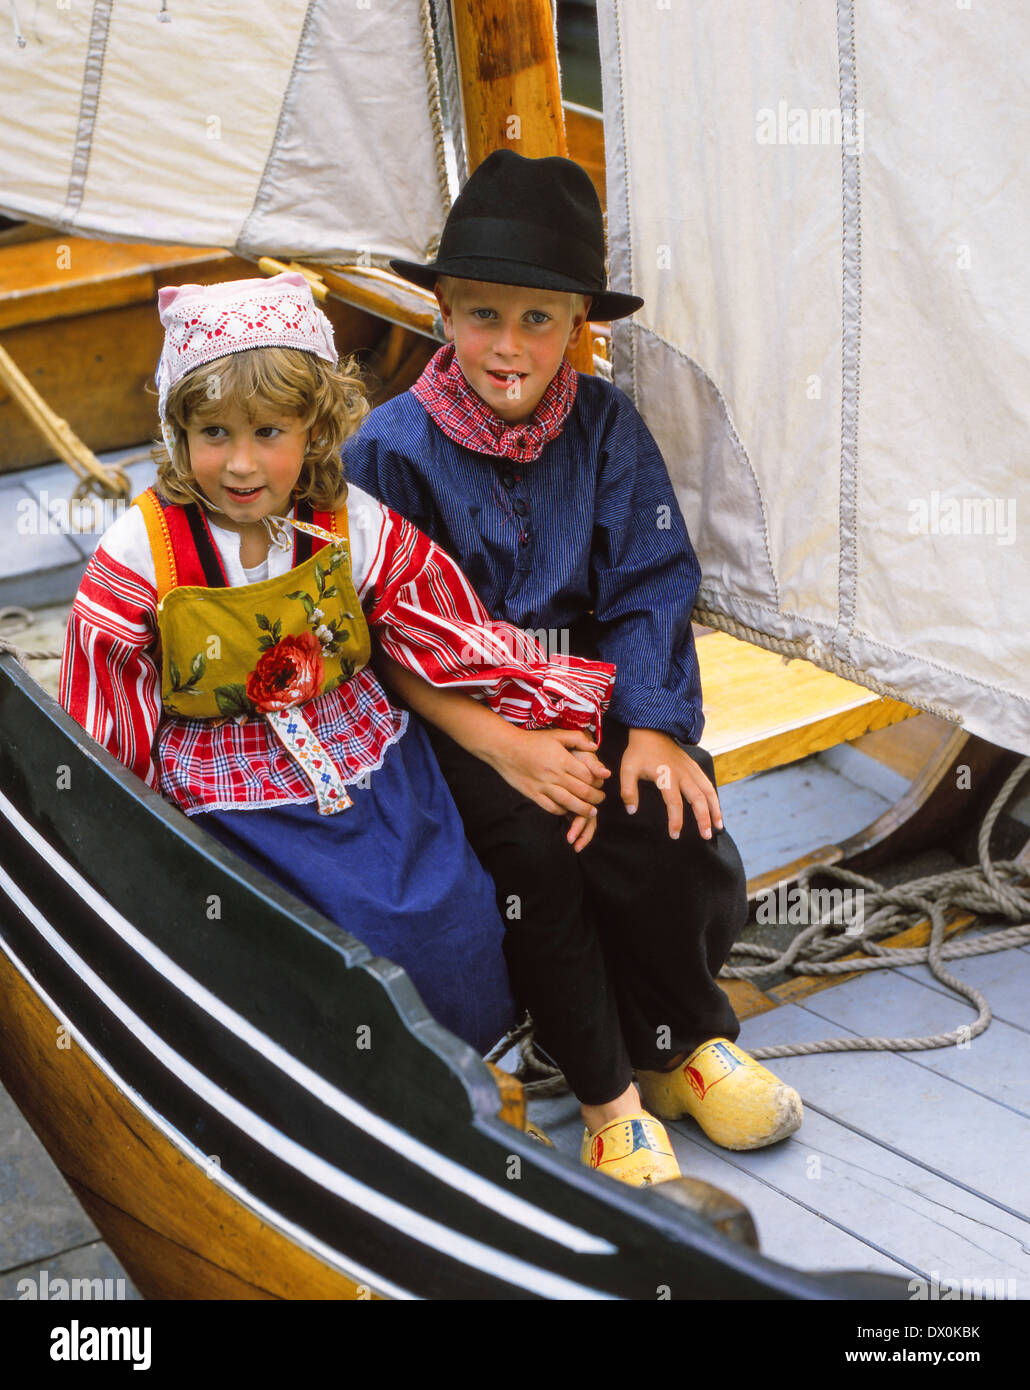 Children in old Zuiderzee costume, Rijks Museum Zuiderzee, Enkhuizen, The Netherlands Stock Photo